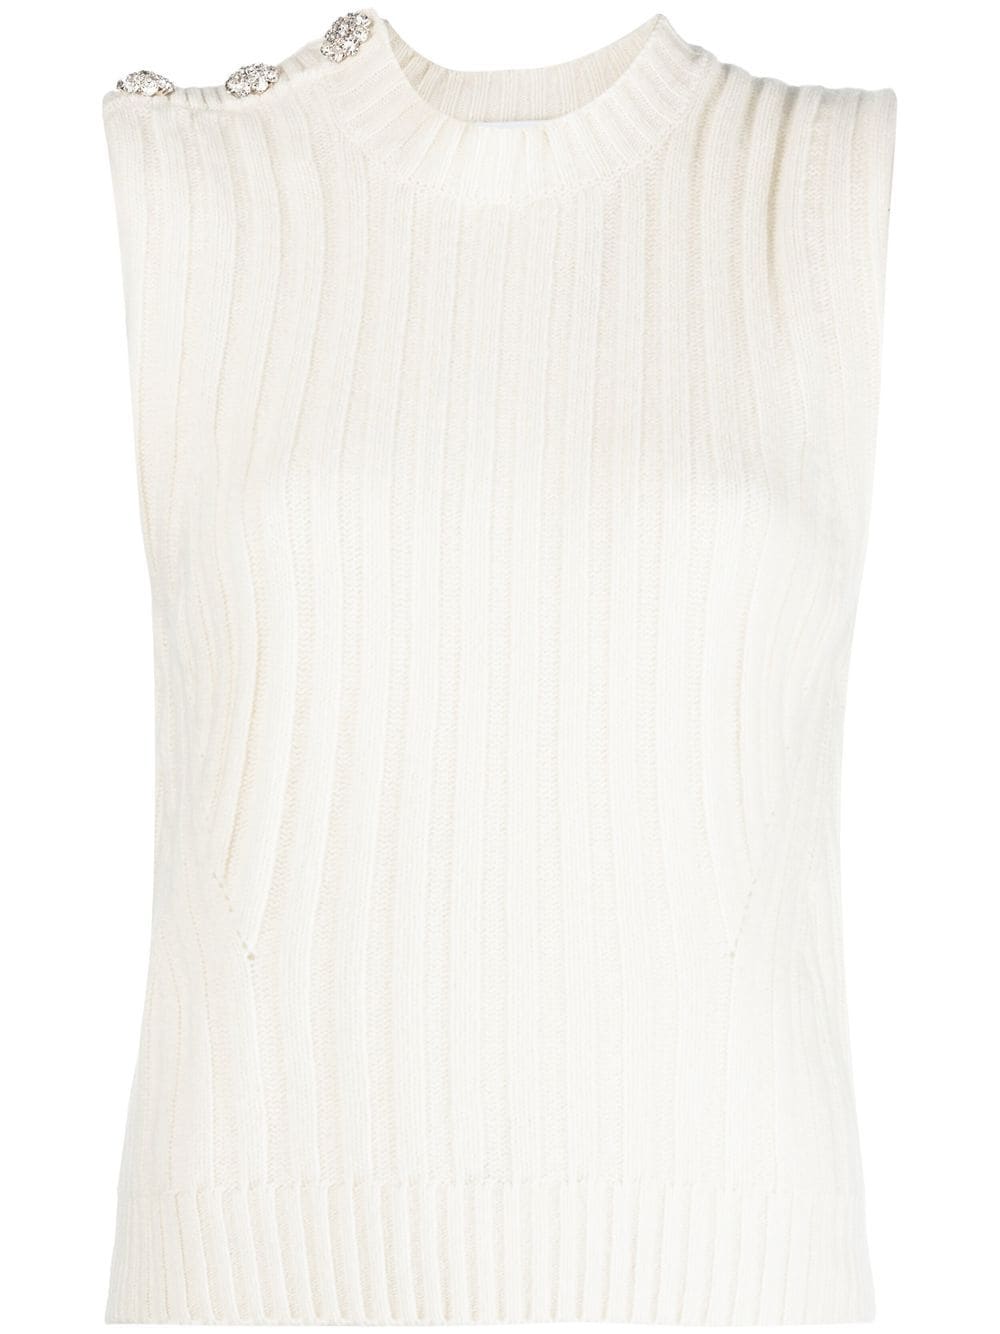 GANNI rib-knit vest top - White